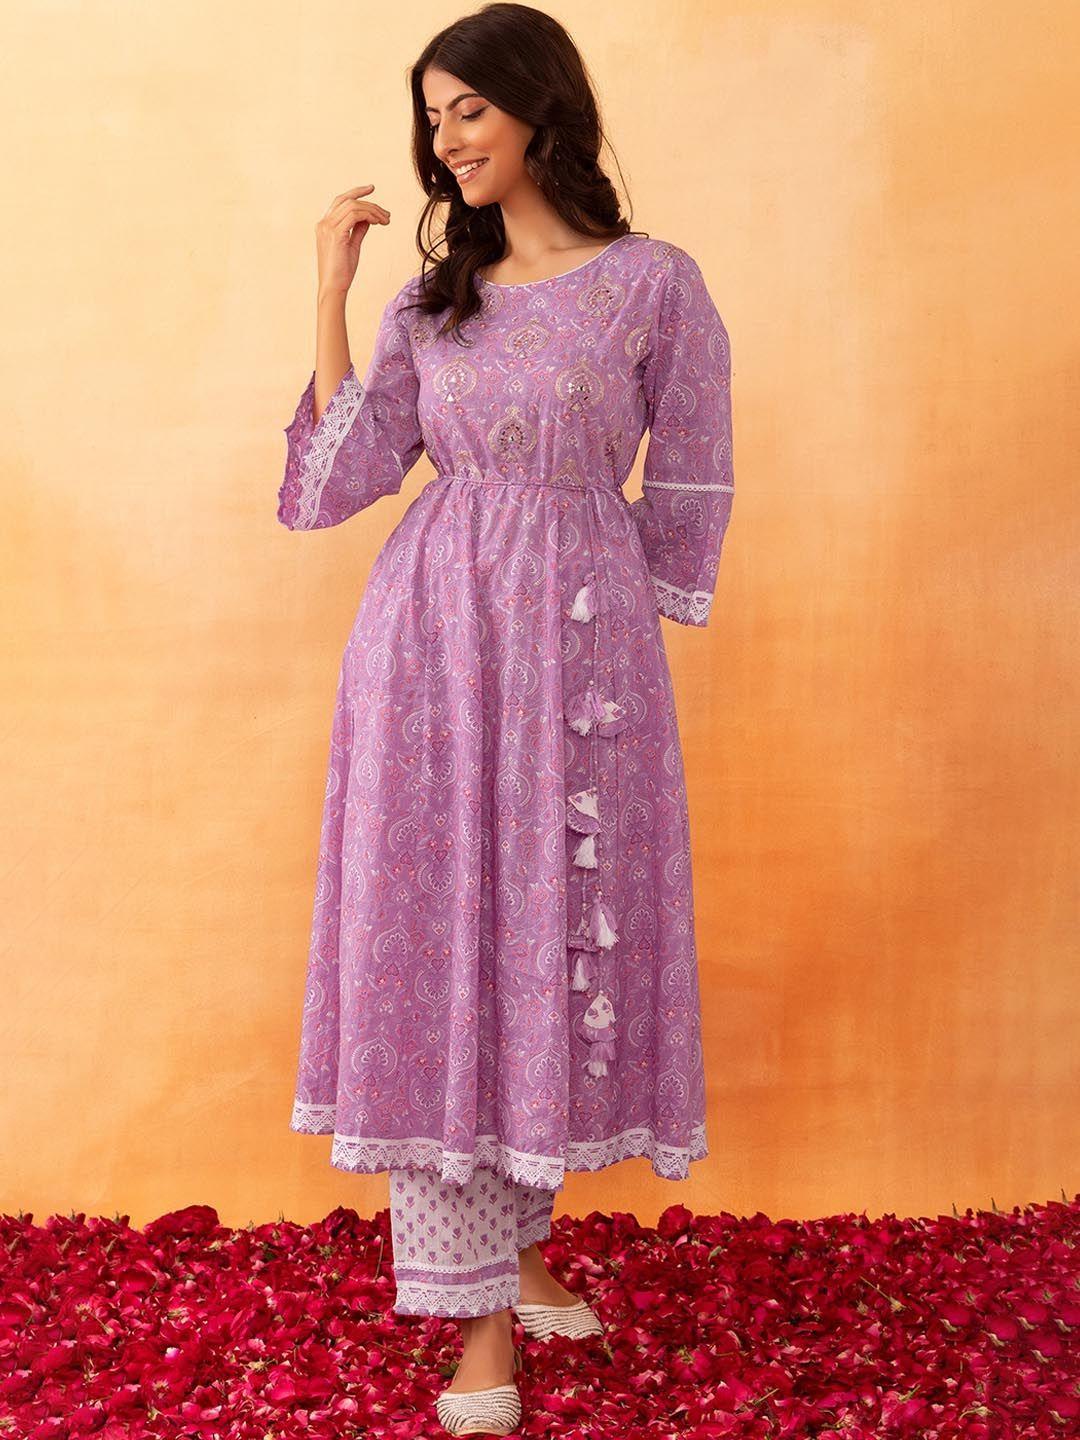 rang by indya mughal printed mirror work lace detail cotton anarkali kurta & trouser